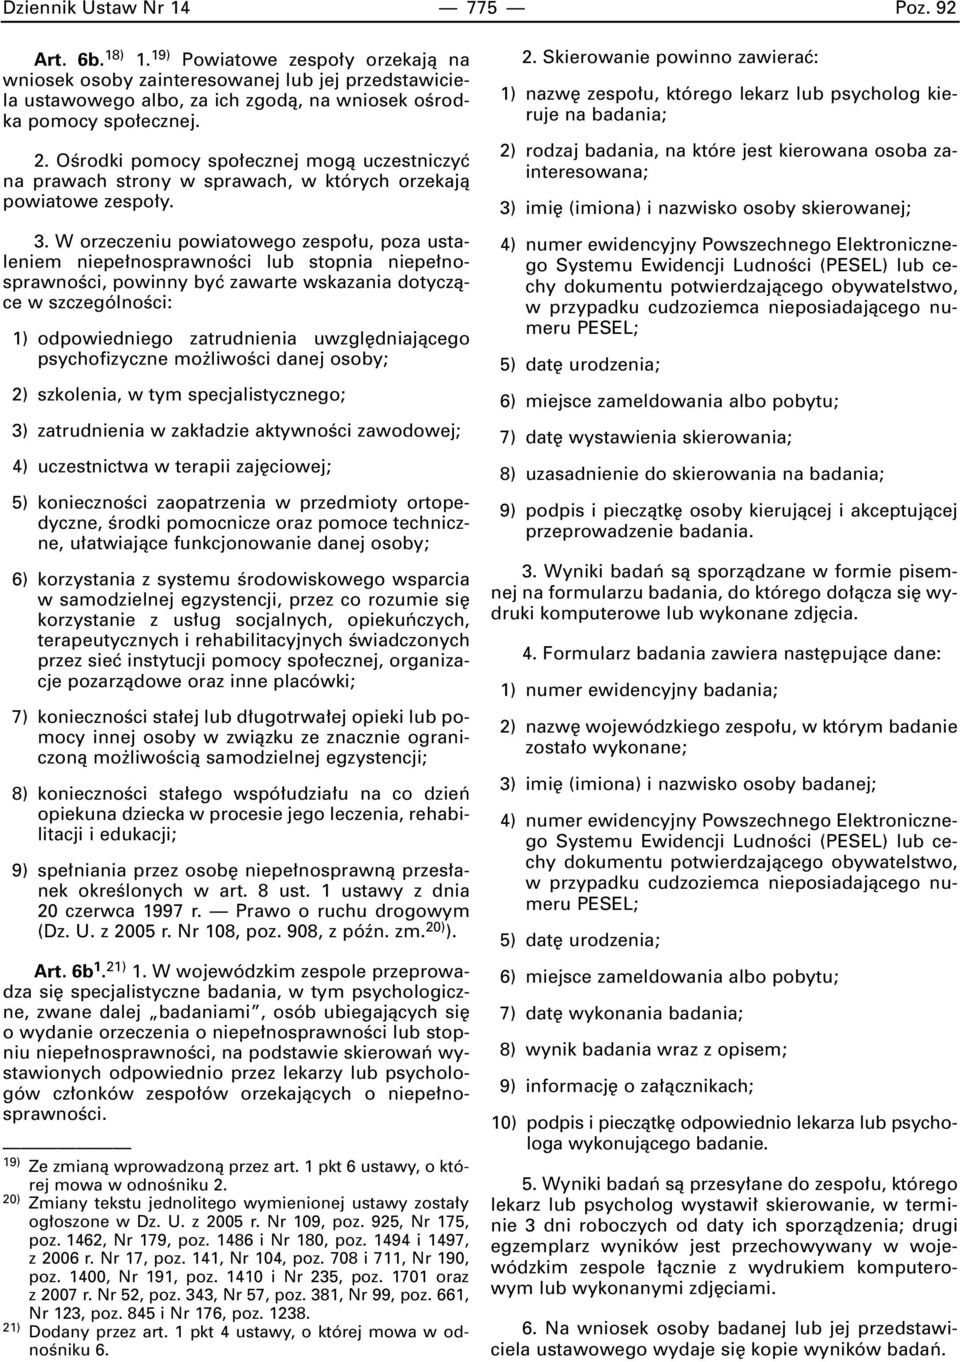 OÊrodki pomocy spo ecznej mogà uczestniczyç na prawach strony w sprawach, w których orzekajà powiatowe zespo y. 3.